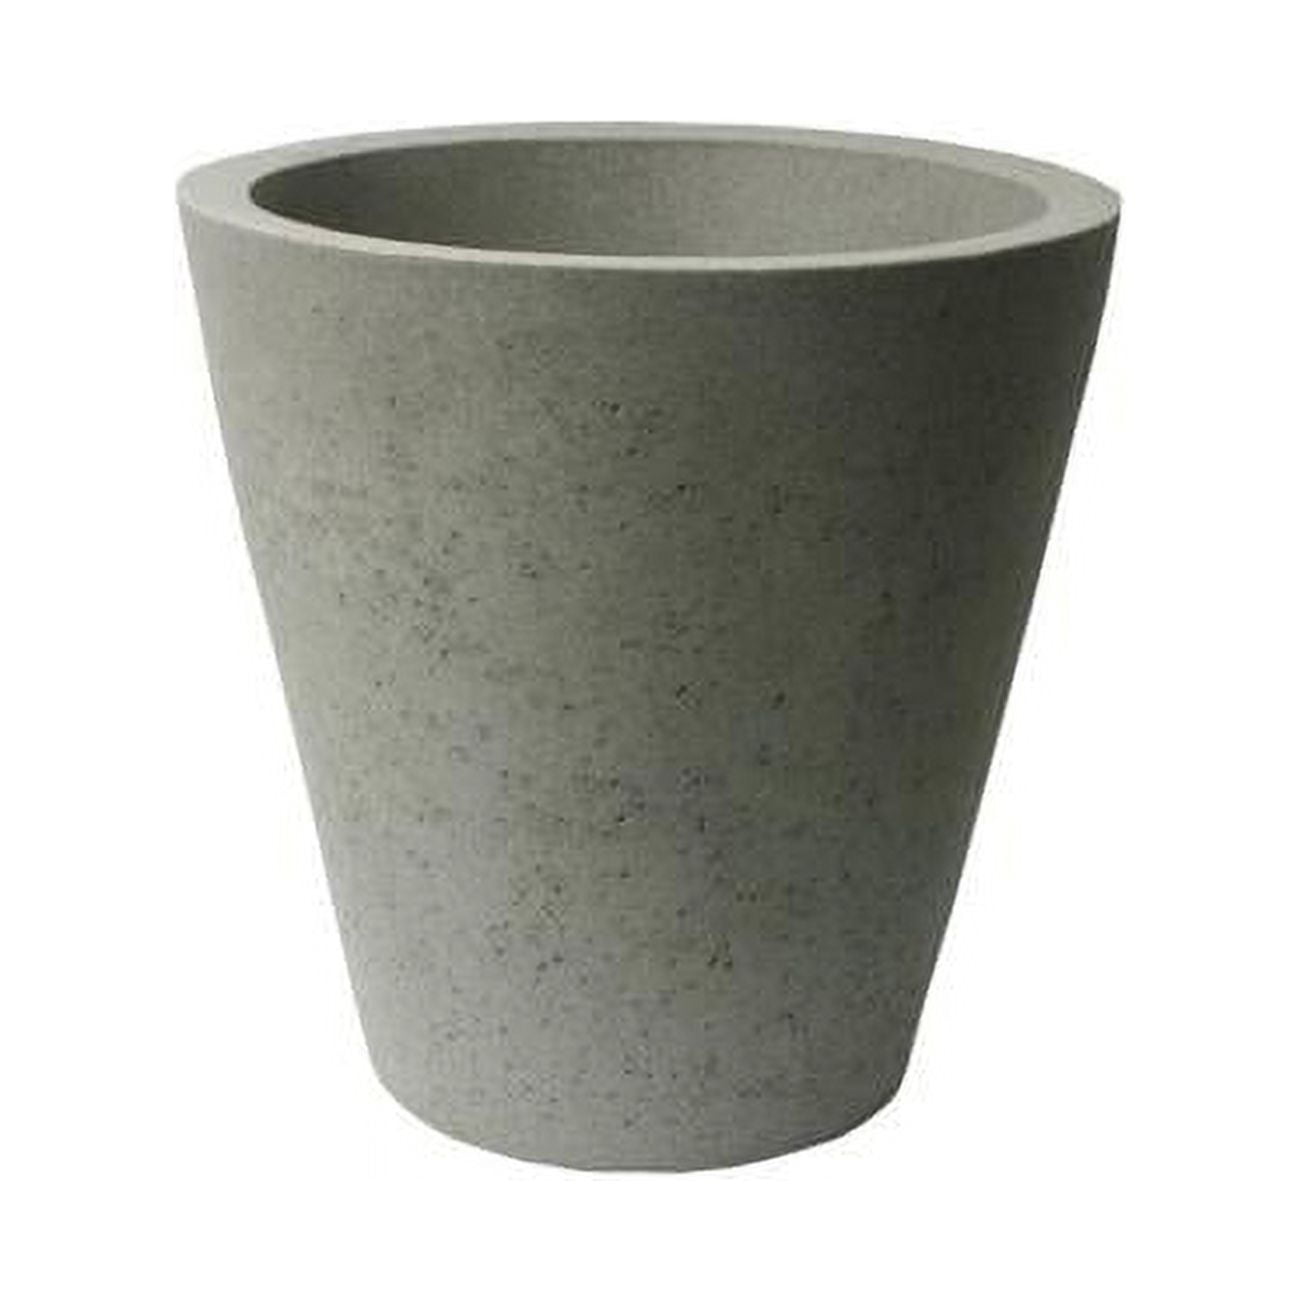 89806 16.5 X 16 In. Crete Self Watering Planter - Concrete Texture - Taupestone